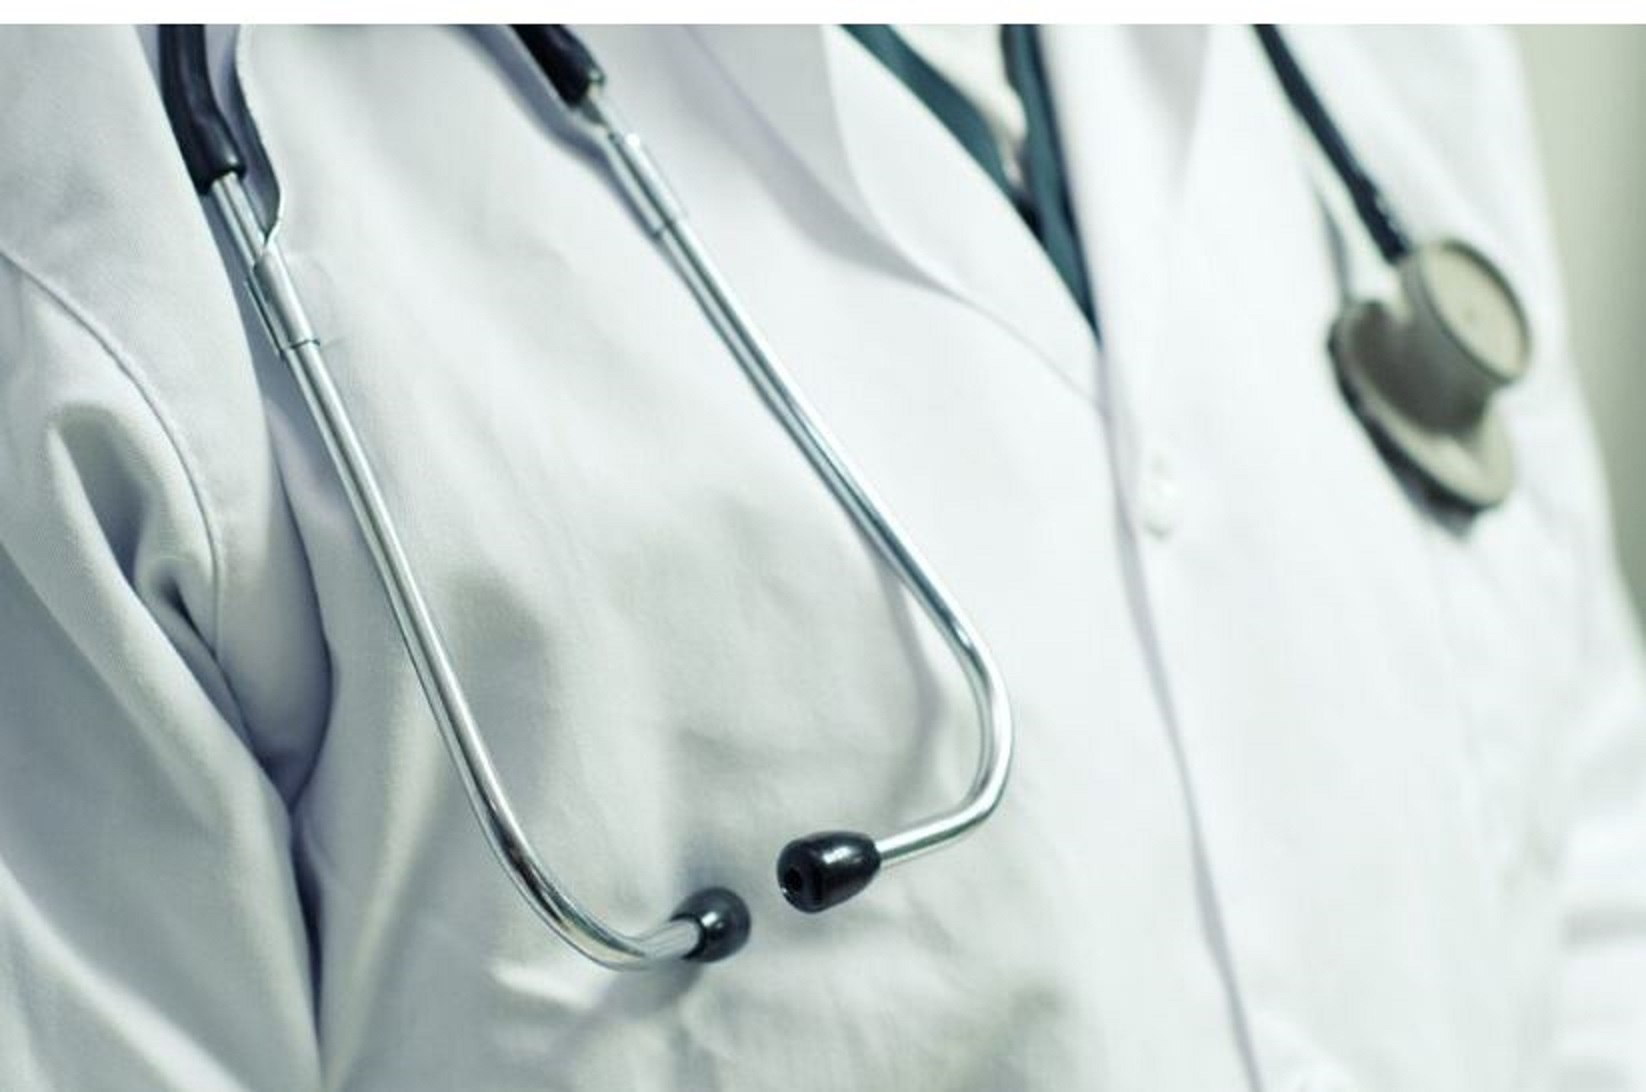 Ο ΙΣΑ στηρίζει τις κινητοποιήσεις της ΕΙΝΑΠ και ζητά το πάγωμα του Νομοσχεδίου που αλλάζει τις εργασιακές σχέσεις των νοσοκομειακών ιατρών